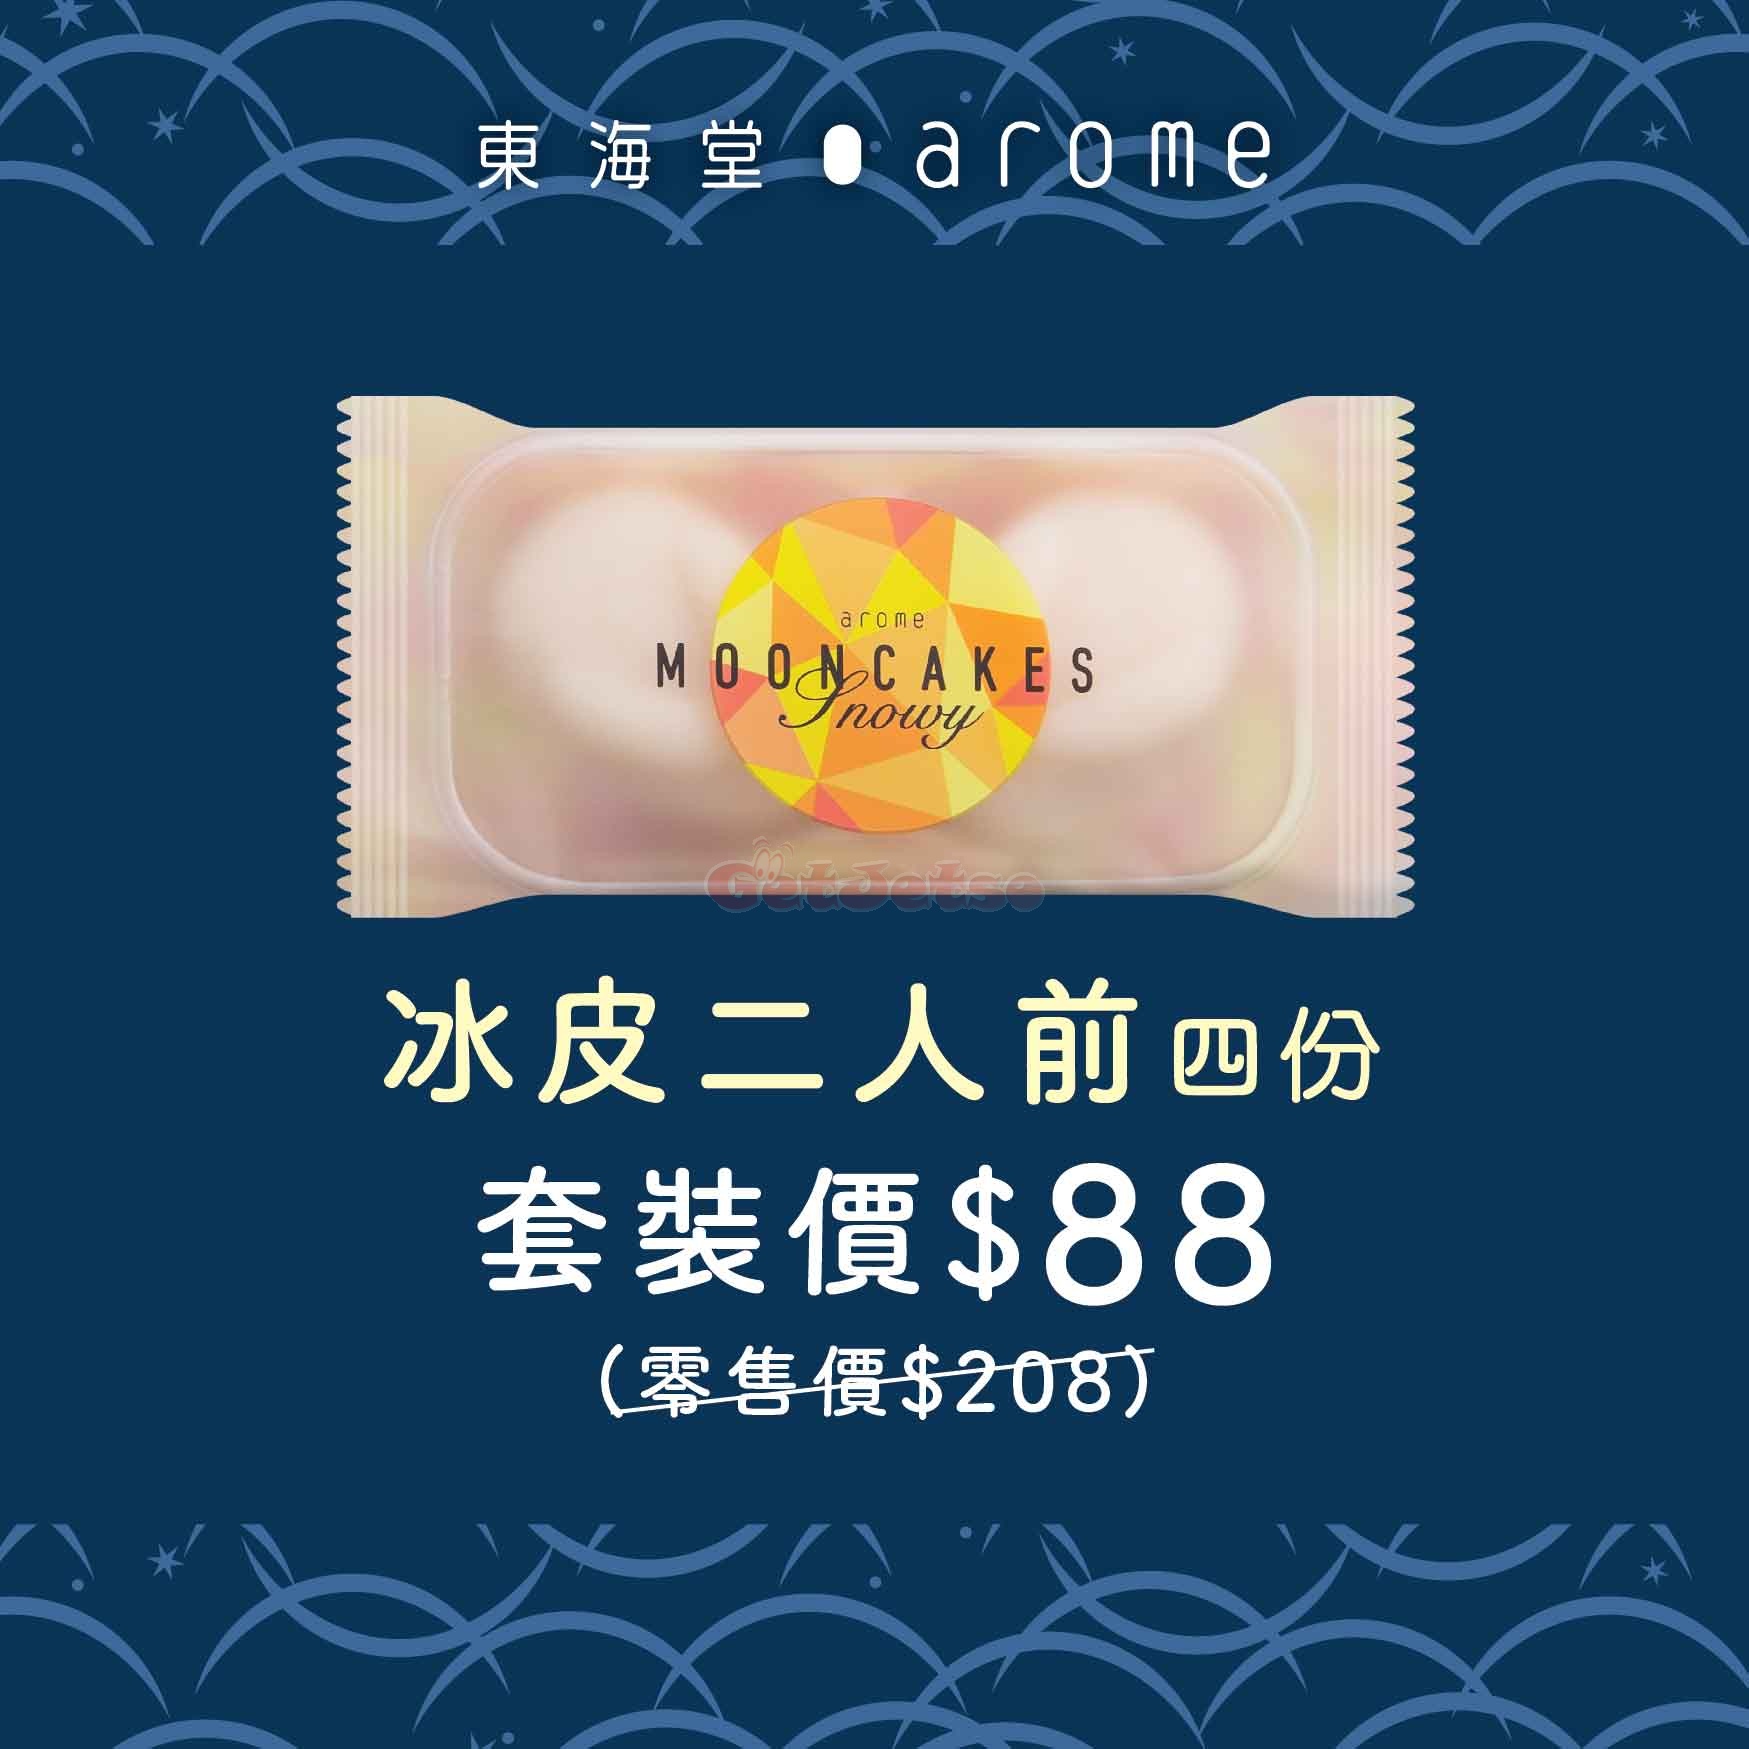 東海堂官網低至4折月餅套裝預購優惠(20年6月30日起)圖片4